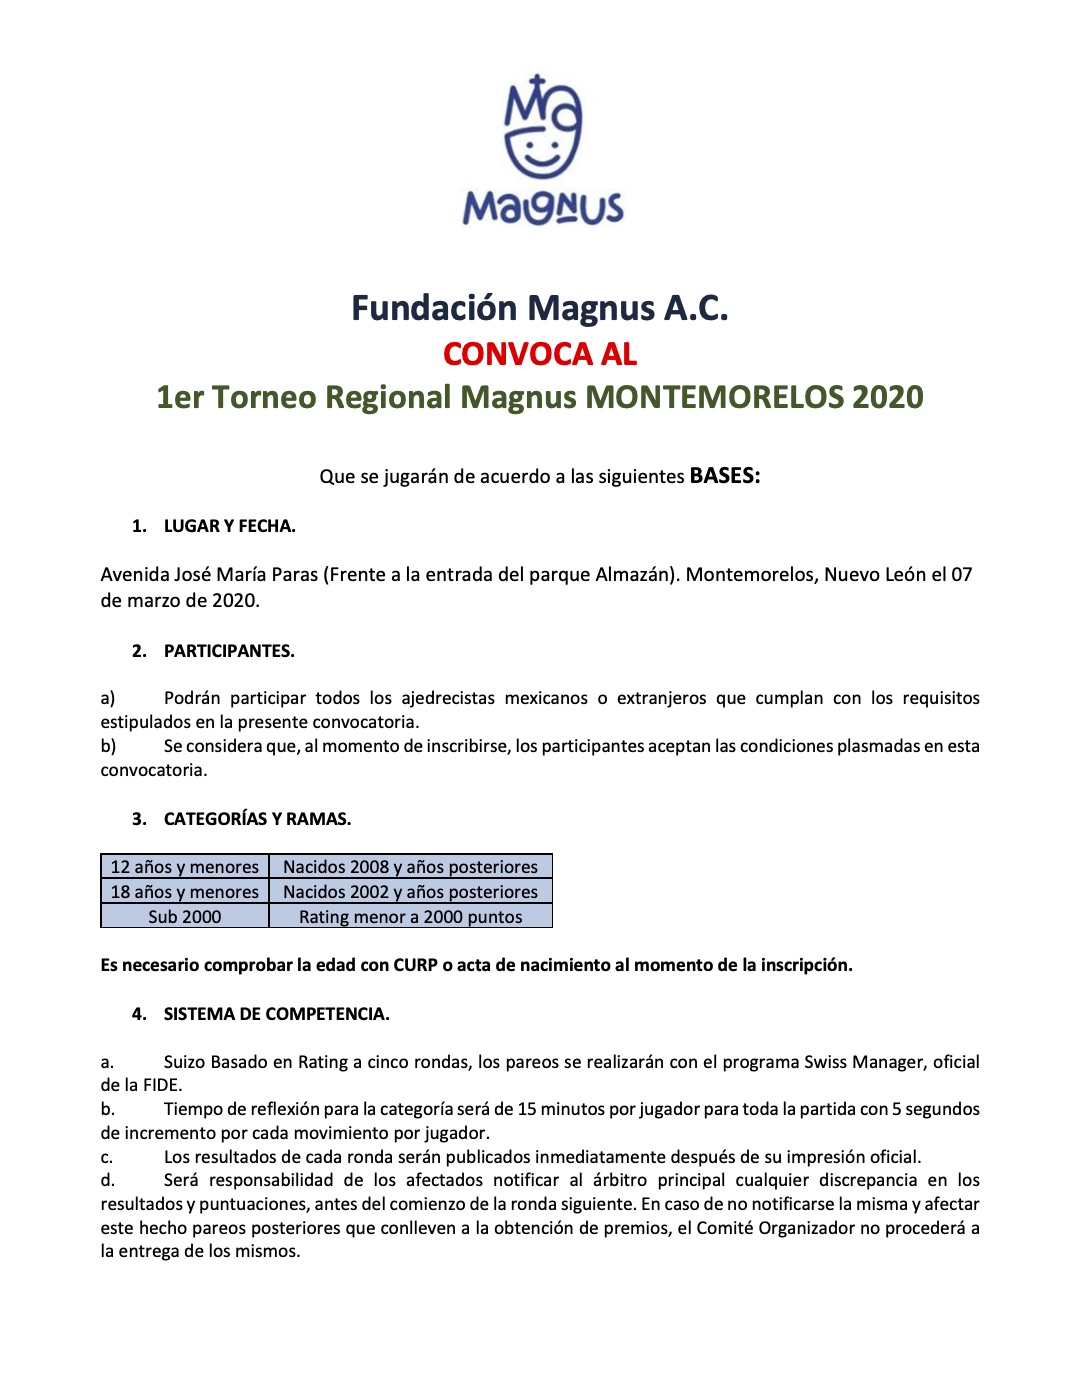 Convocatorio de  1er Torneo Regional Magnus Montemorelos 2020